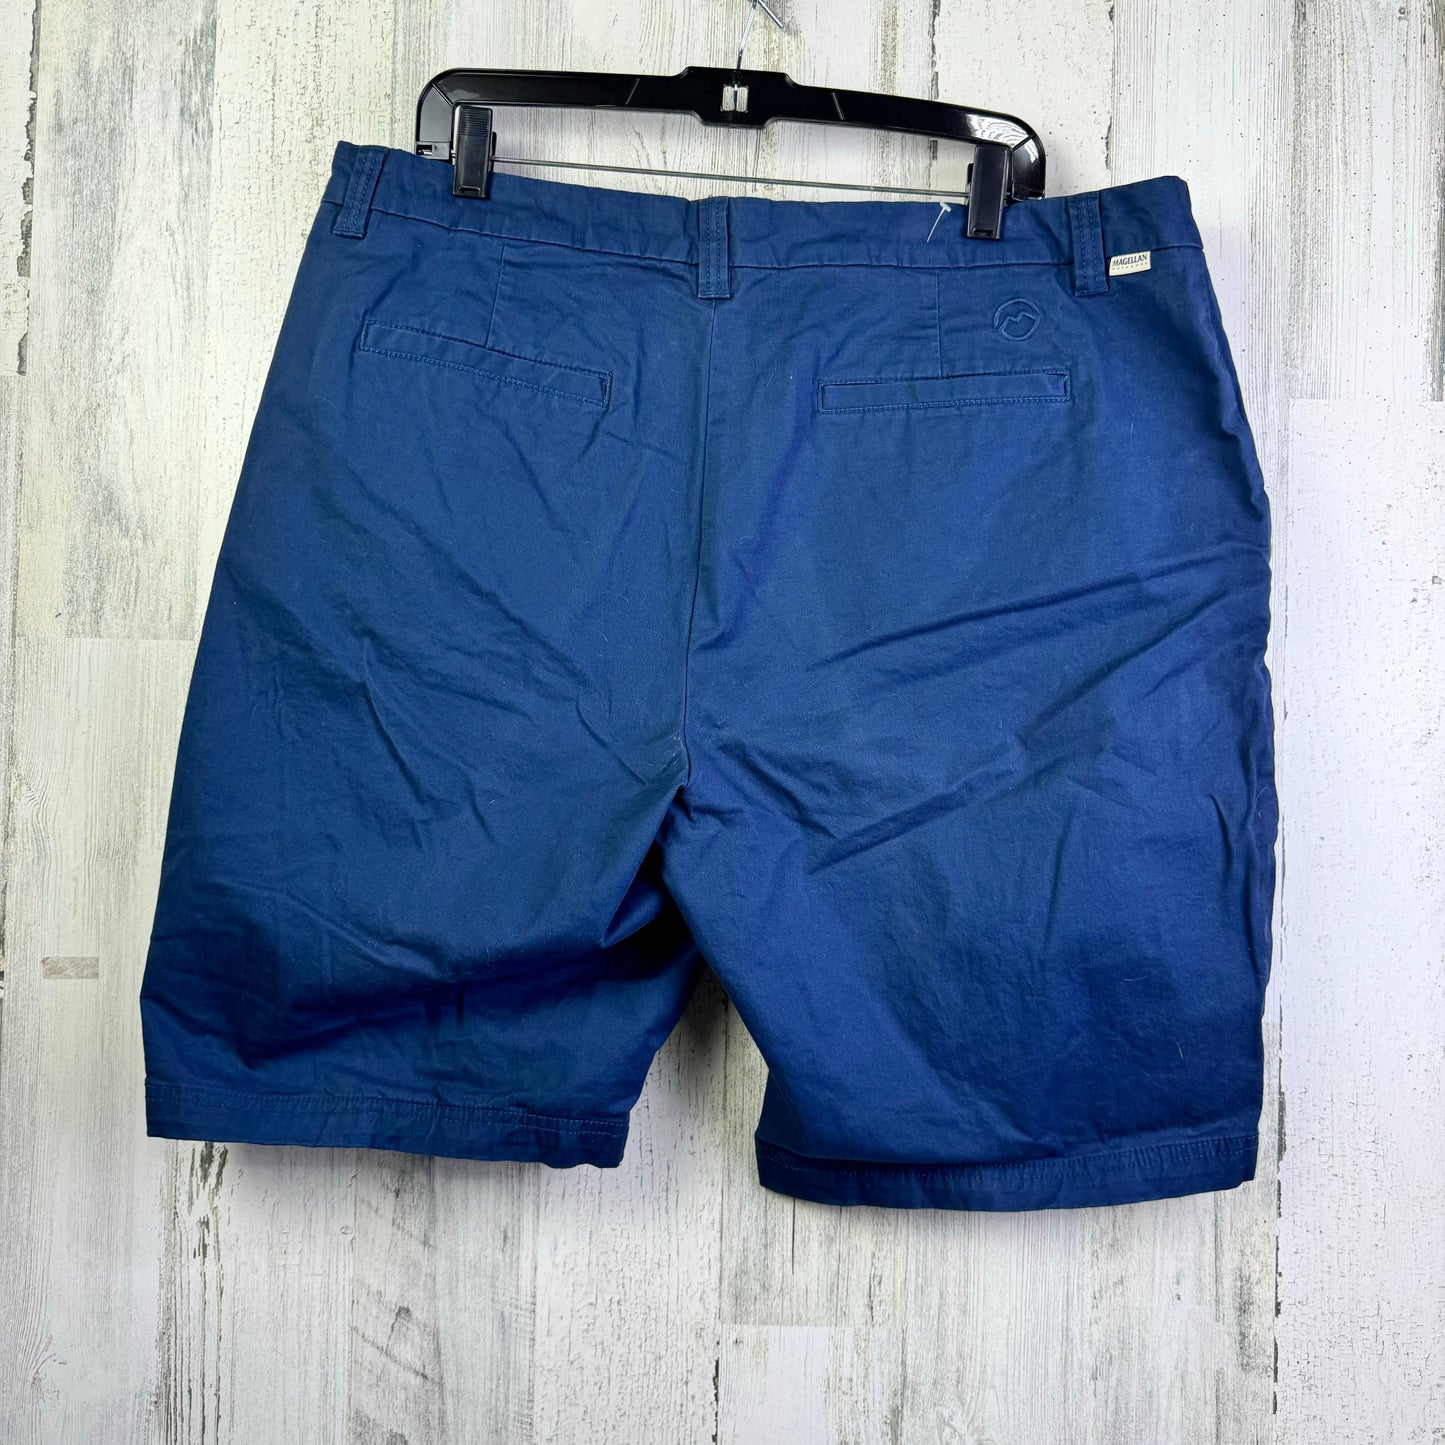 Blue Shorts Magellan, Size 18